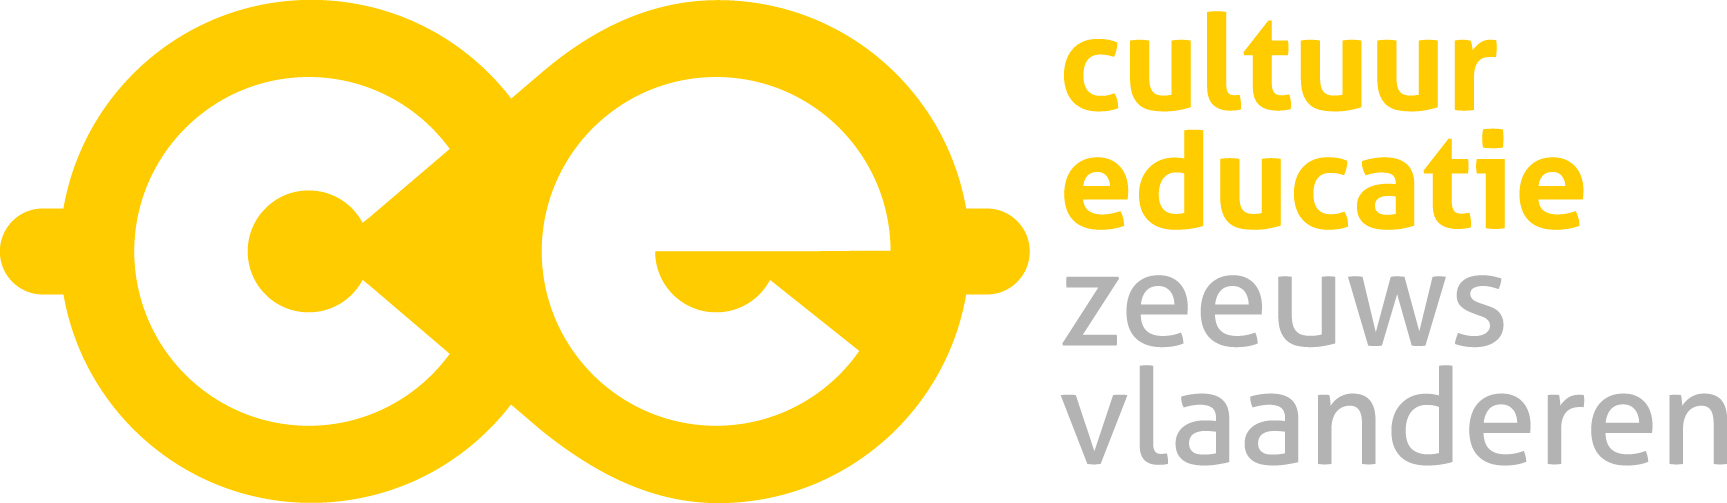 Logo Cultuureducatie Zeeuws-Vlaanderen